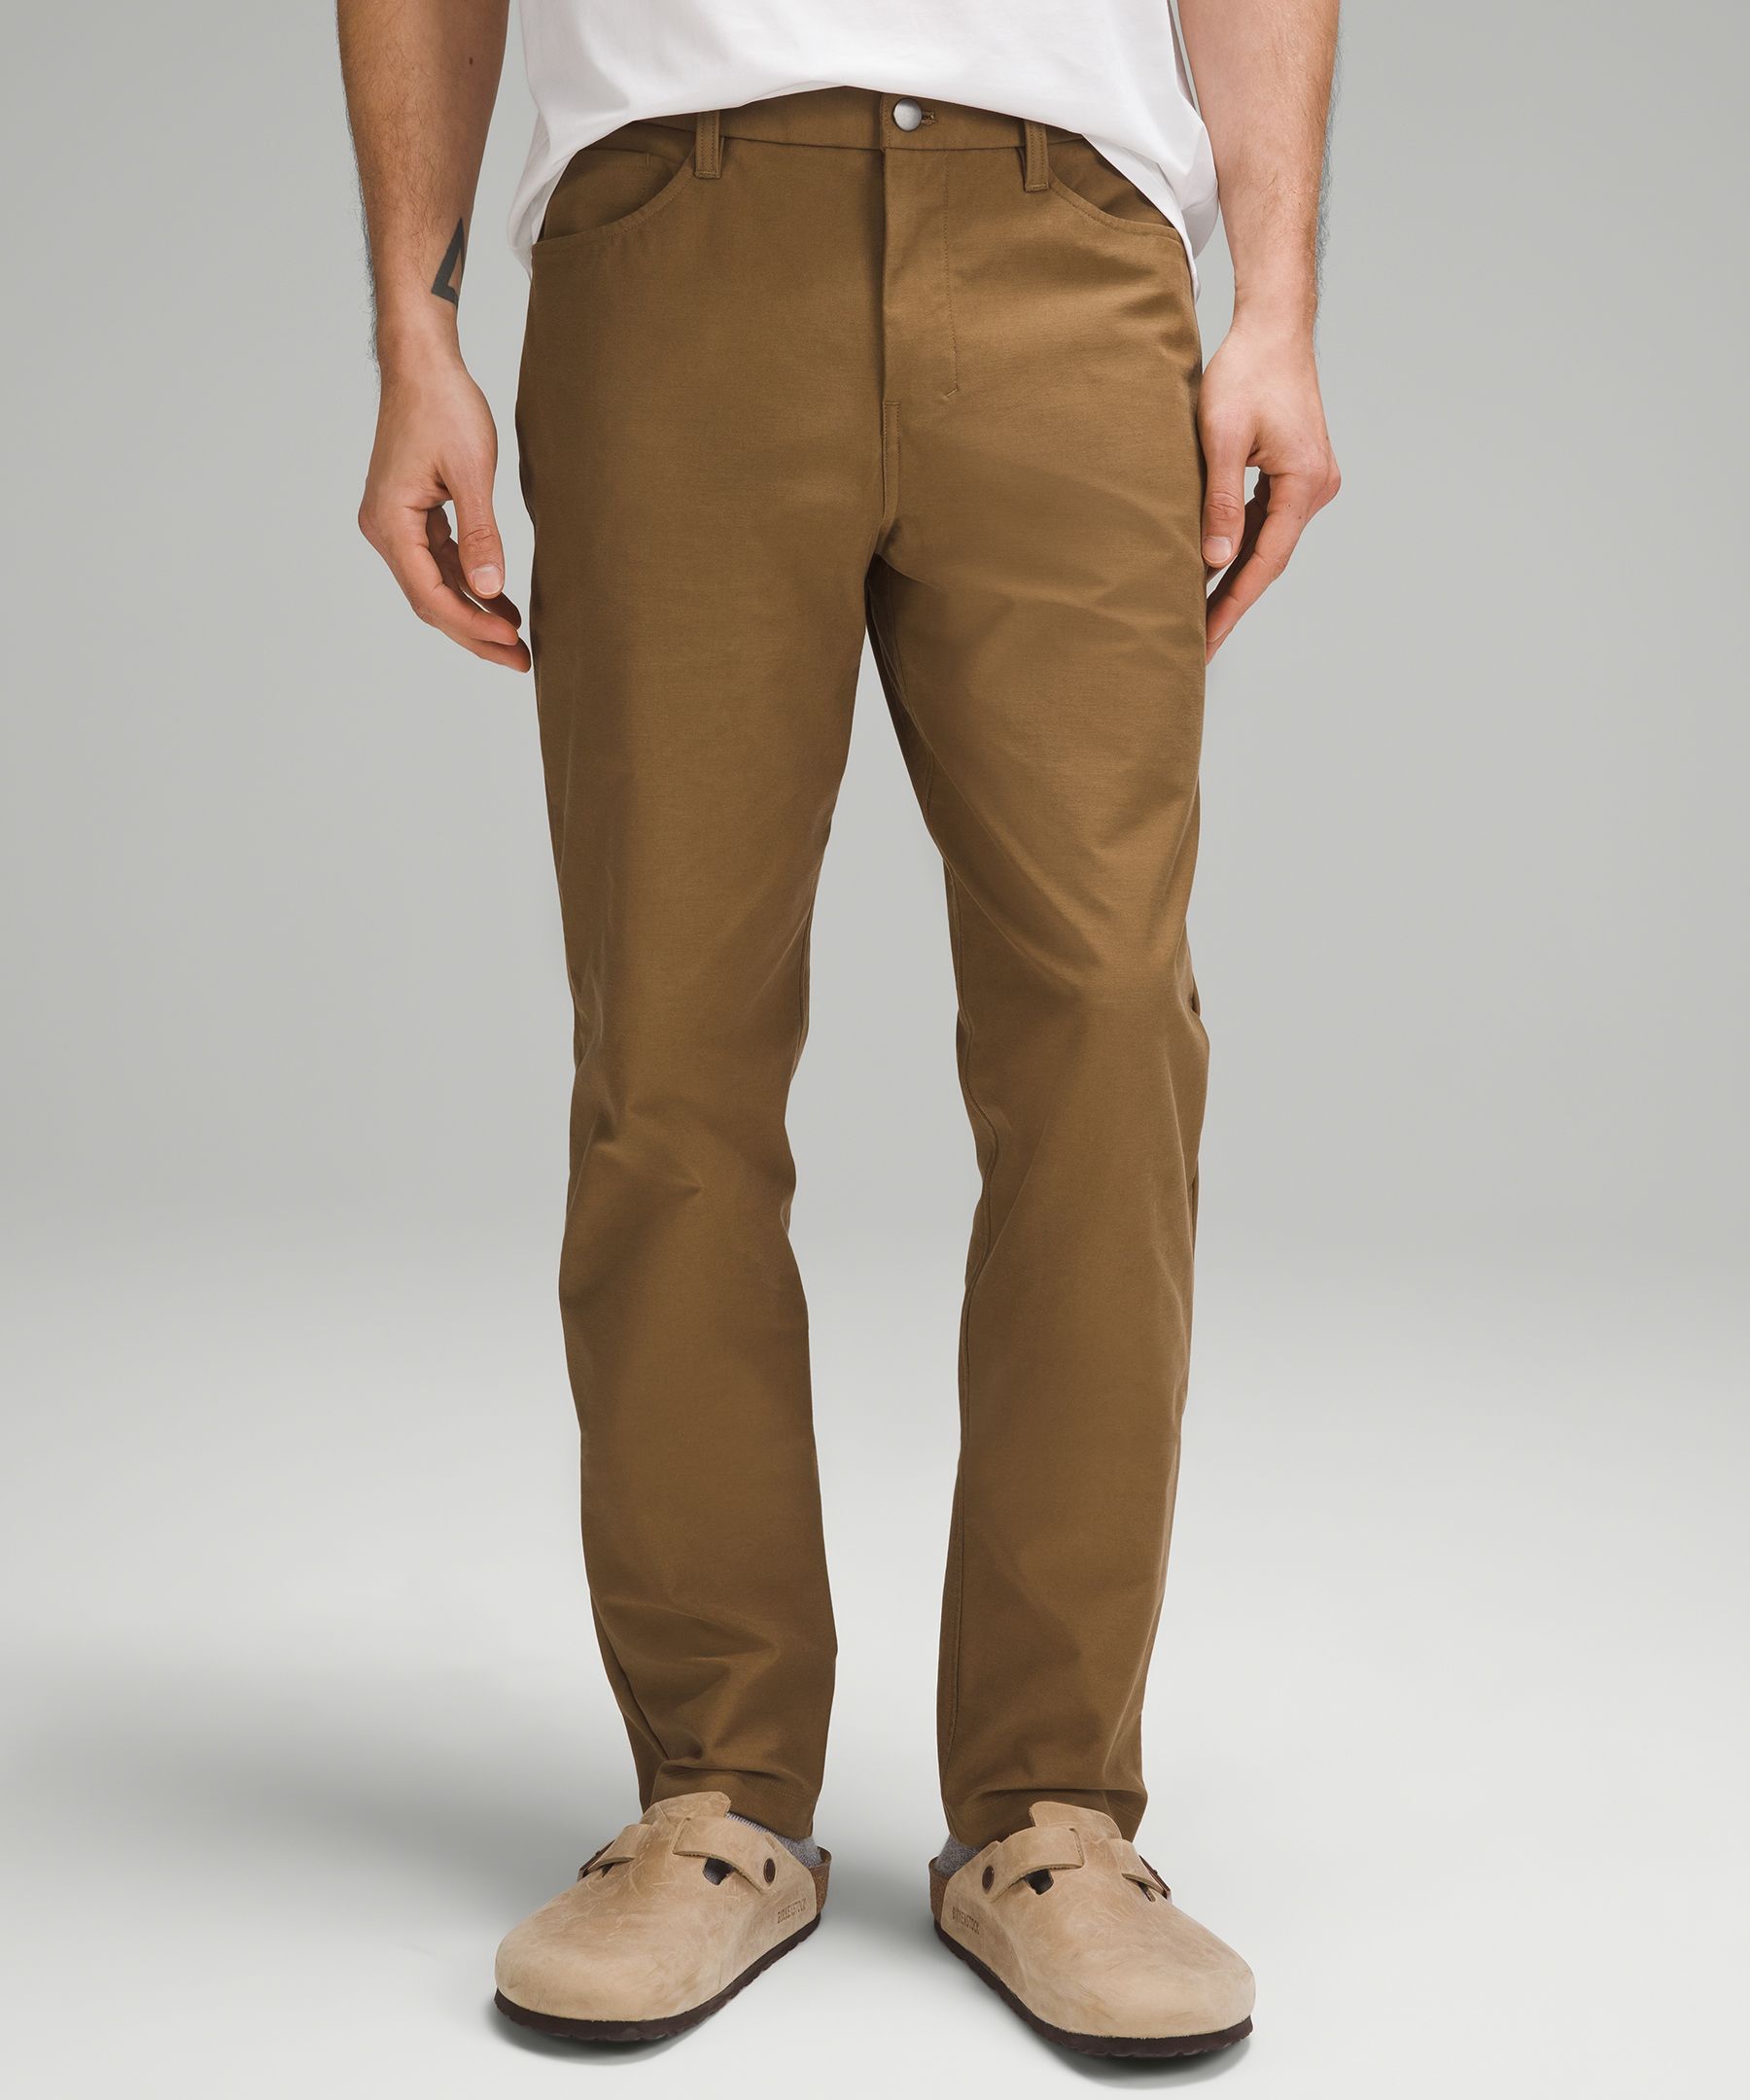 ABC Classic-Fit 5 Pocket Pant 30"L *Utilitech | Men's Trousers